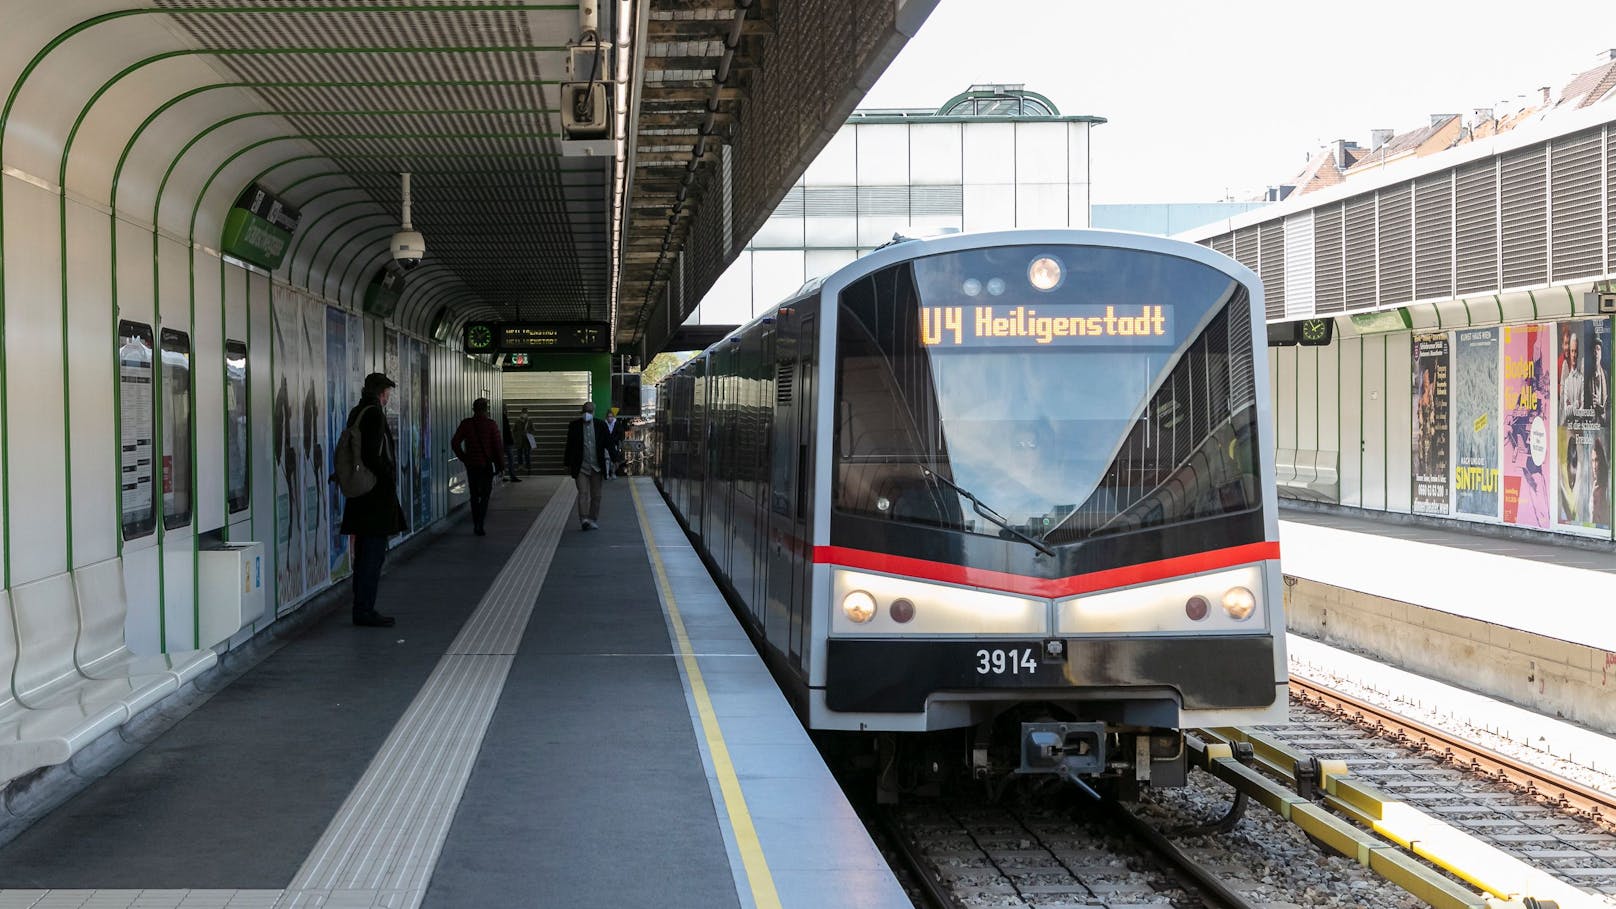 Wiener von U-Bahn eingezwickt, bekommt 14.000 Euro